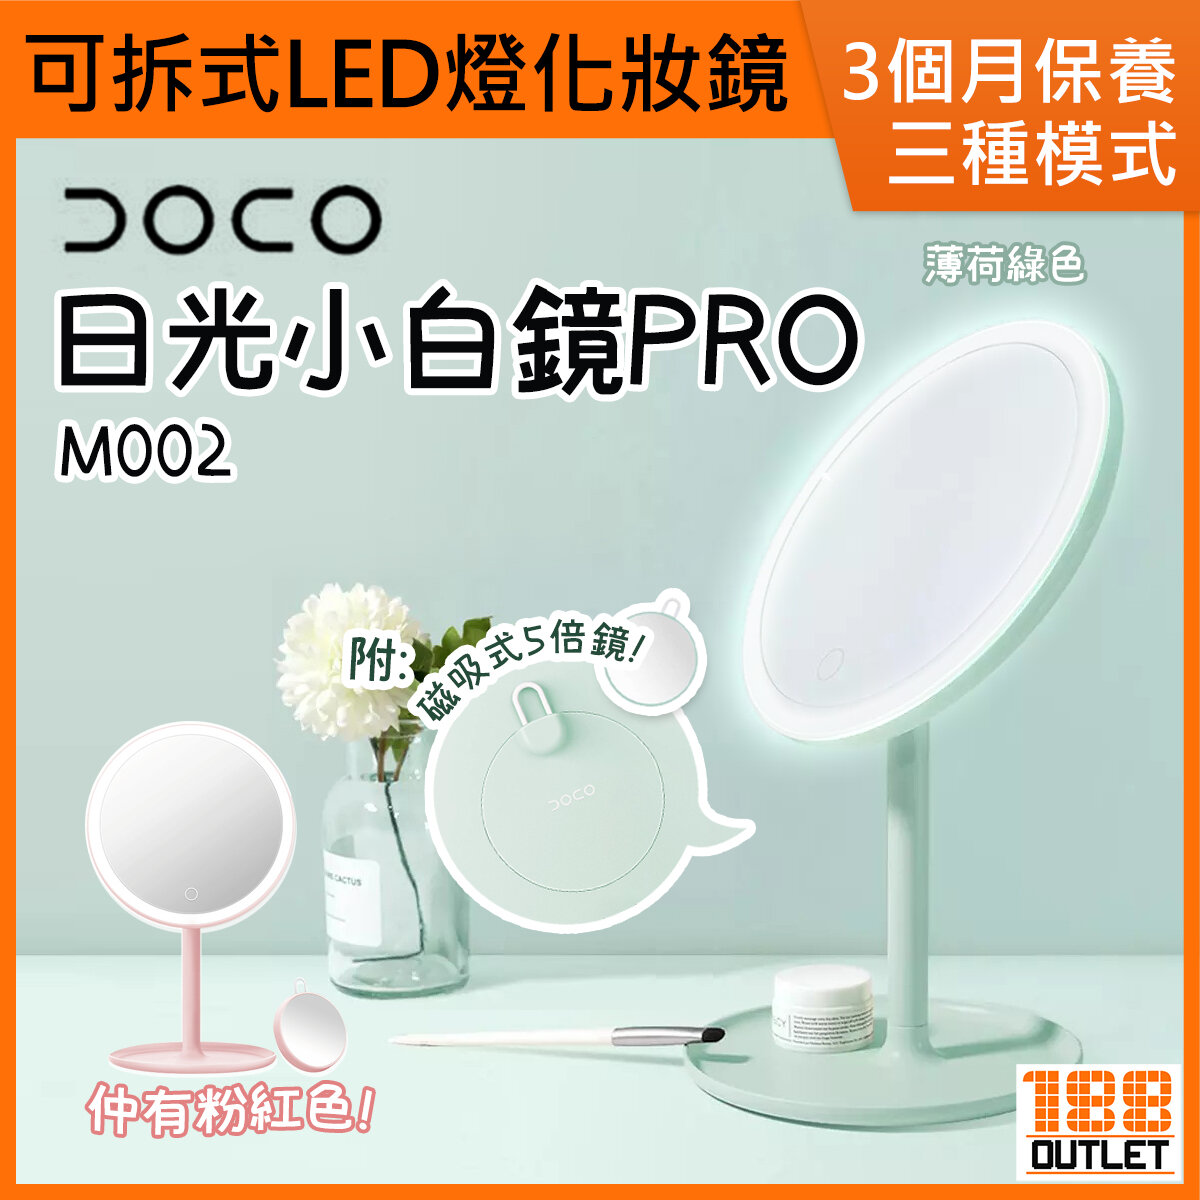 小米有品, DOCO 日光小白鏡Pro 可拆式LED燈化妝鏡(含5倍鏡) M002 薄荷綠色[平行進口], 顏色: 綠色